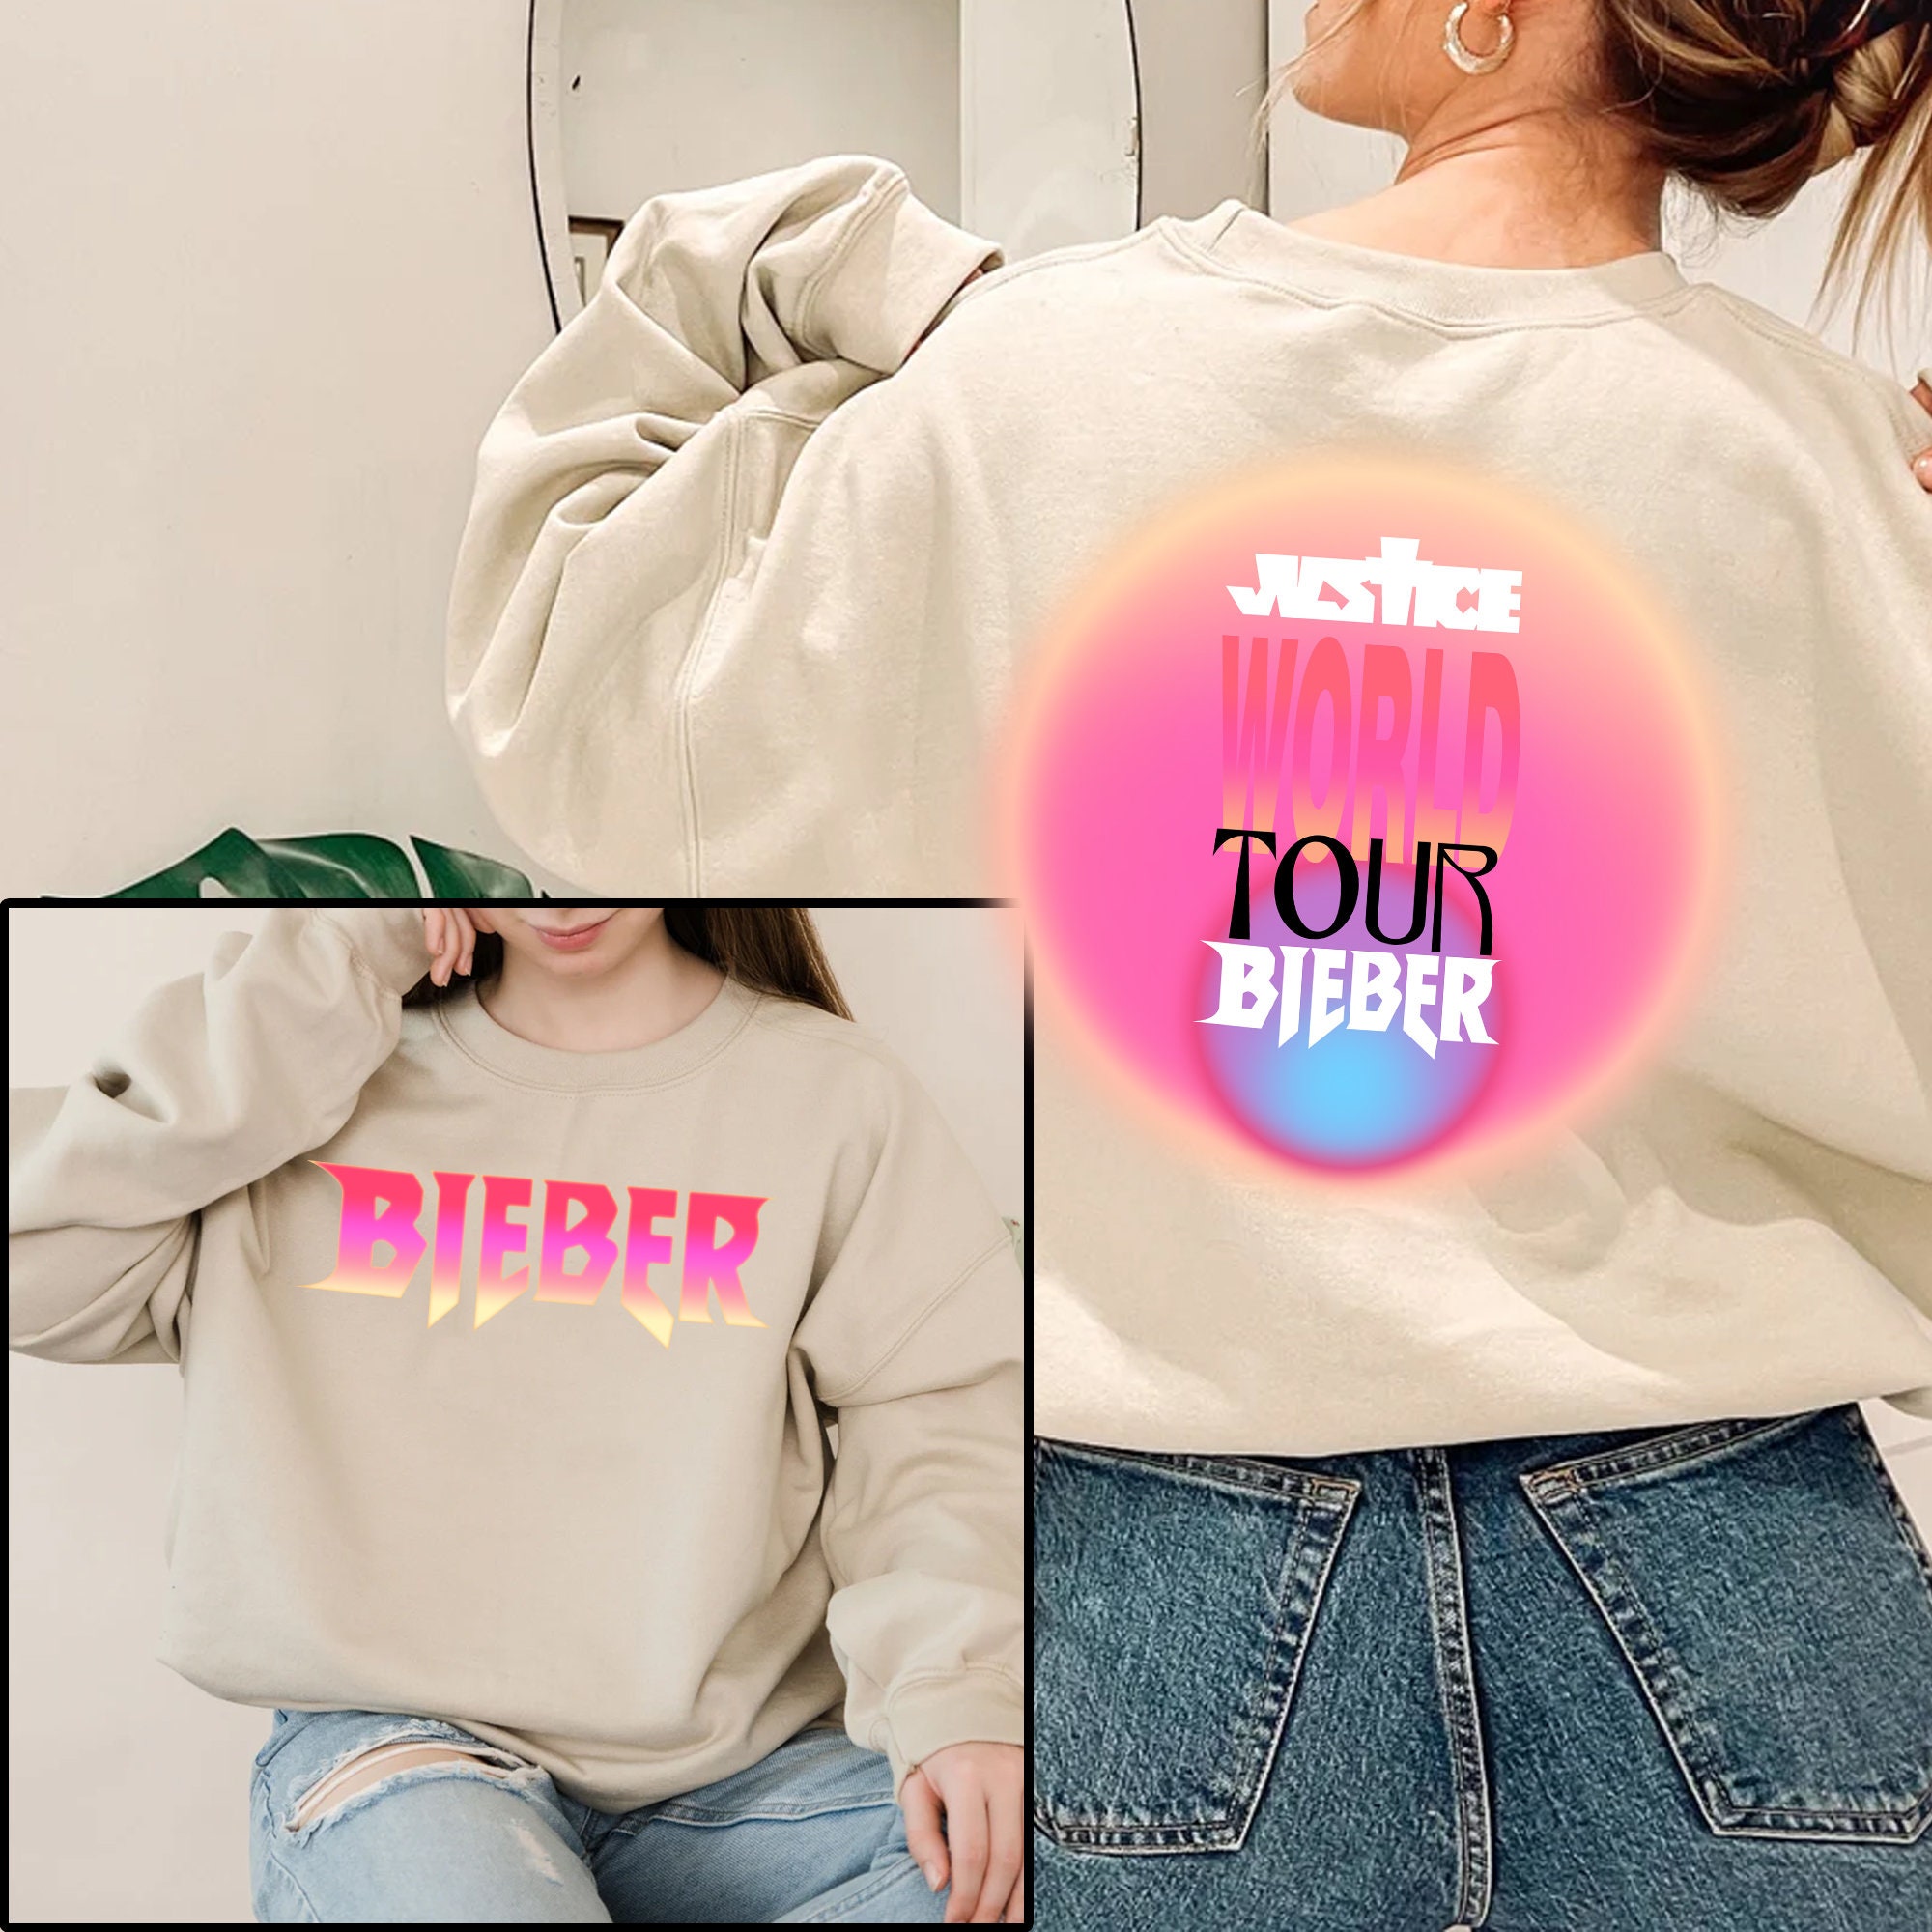 Justice World Tour Bieber 2022 Sweatshirts